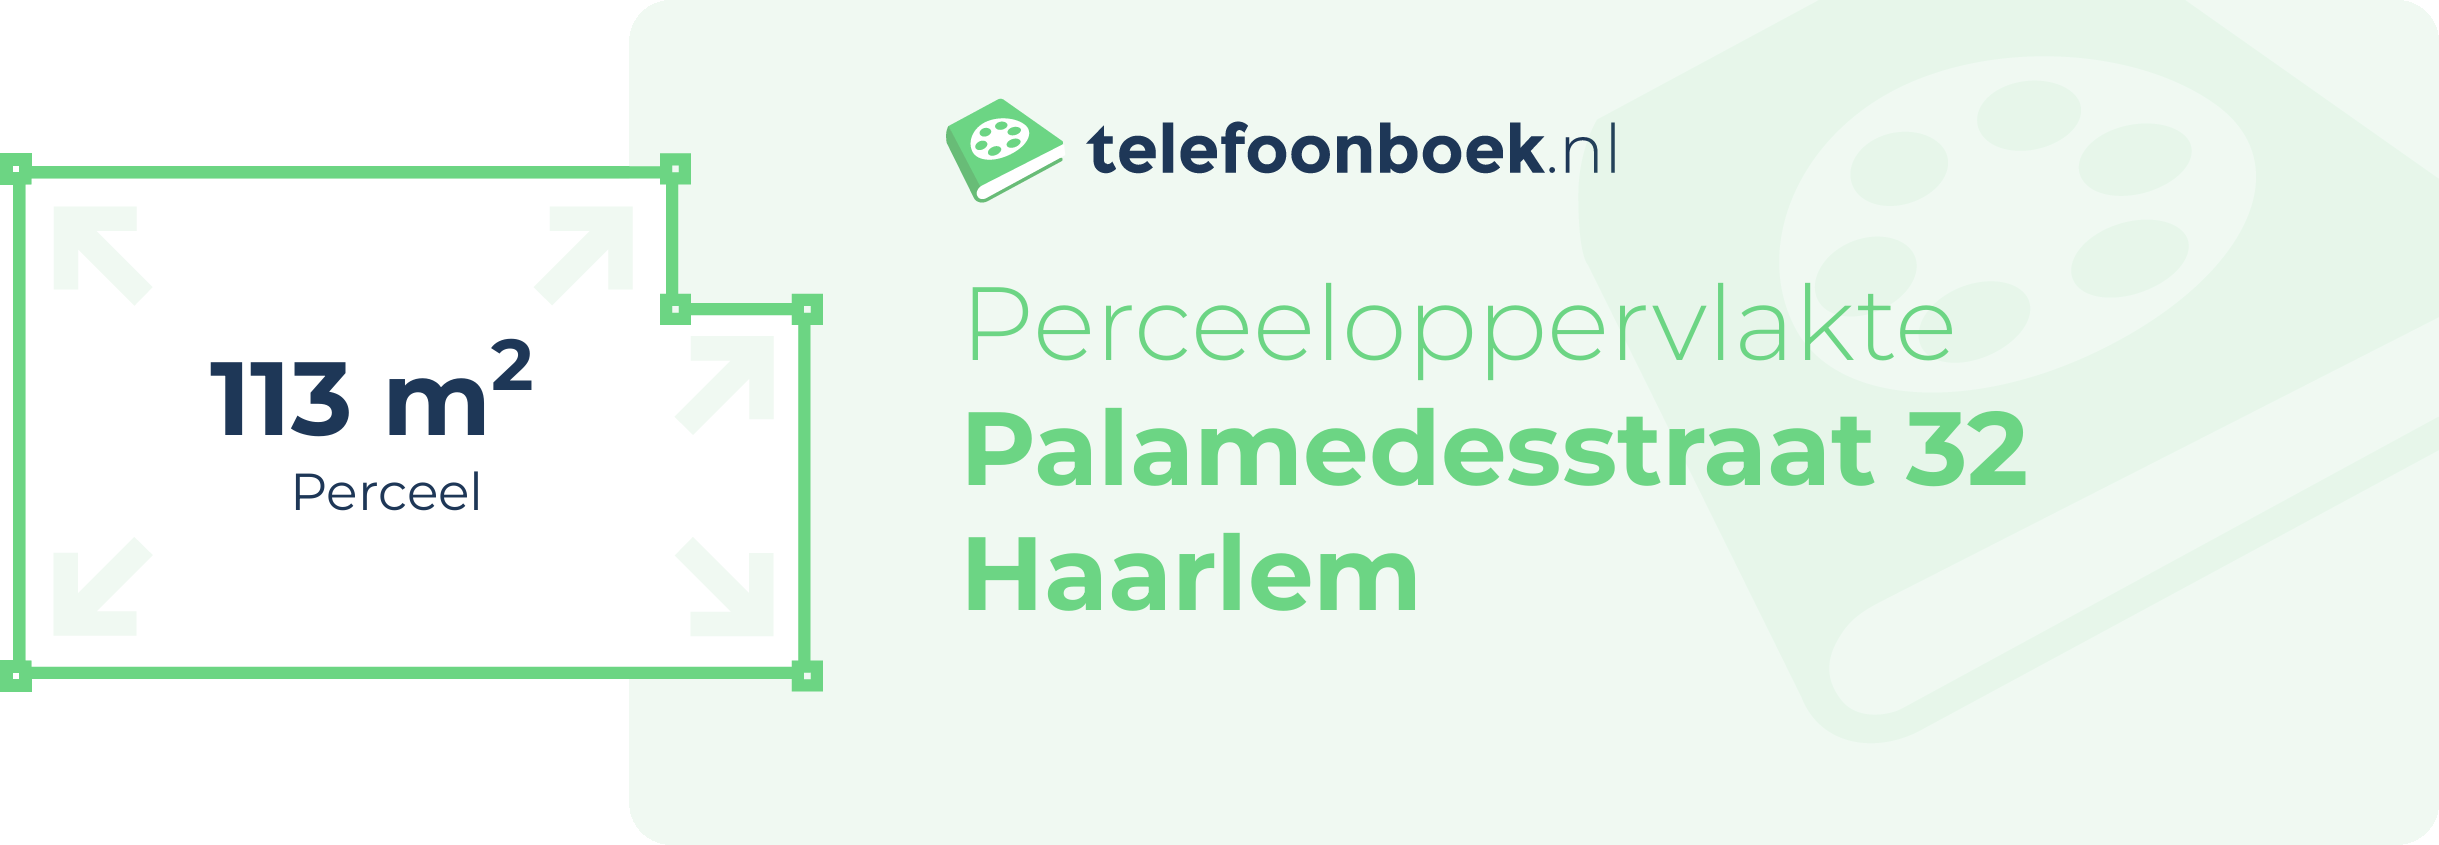 Perceeloppervlakte Palamedesstraat 32 Haarlem